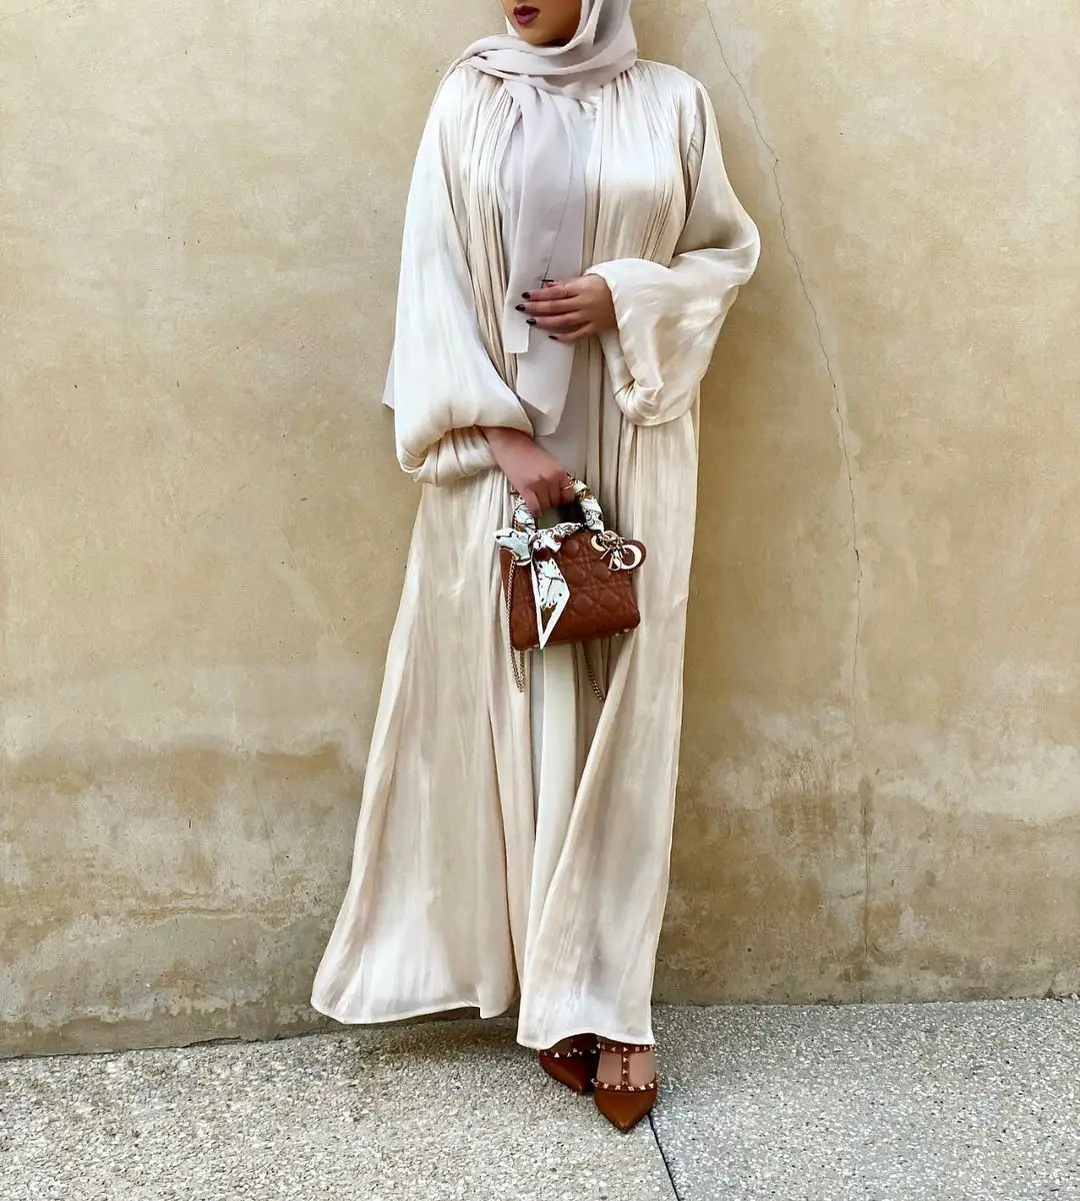 Кафтан Abayas для женщин Дубай Abaya кимоно индейка мусульманский хиджаб платье BubbleSleeve летнее макси элегантное платье кафтан мусульманская одеж...